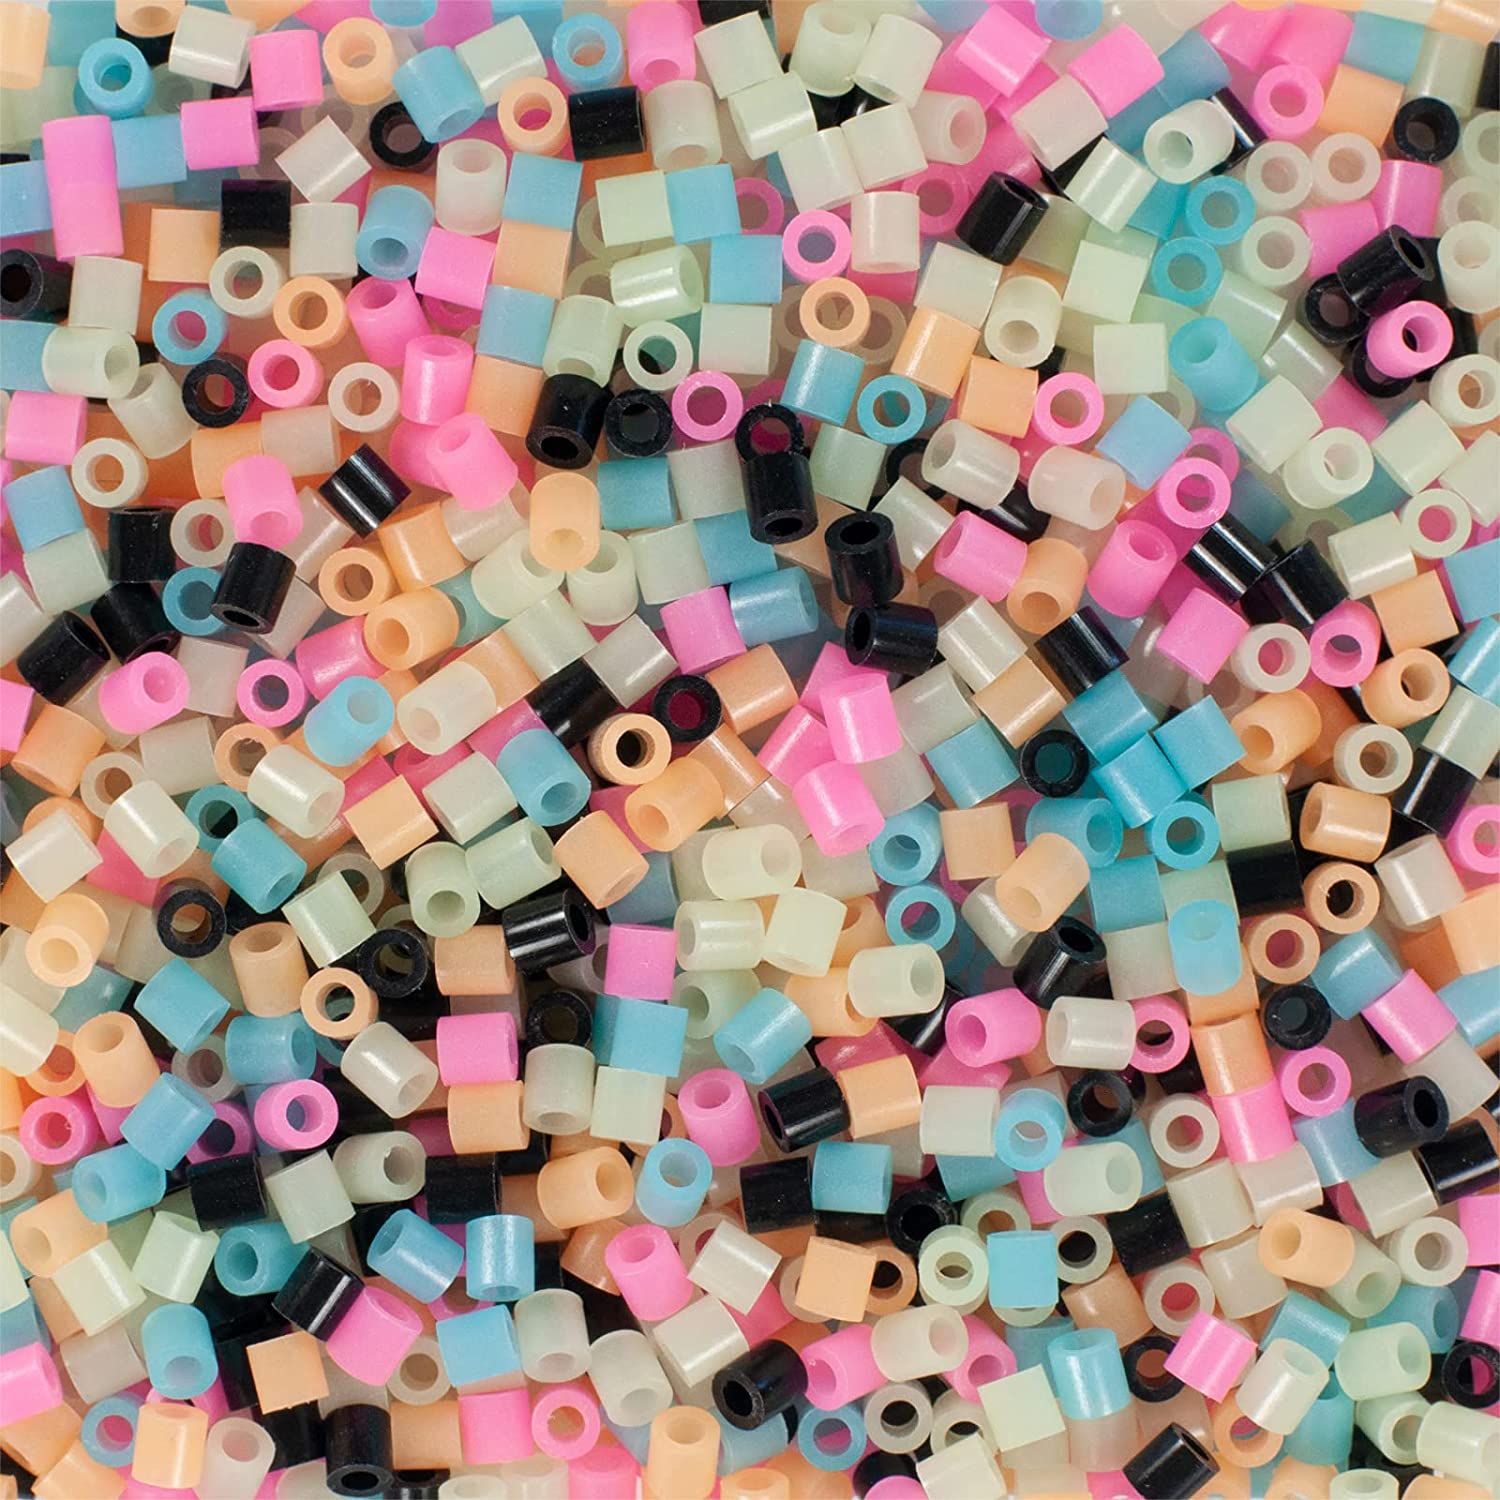 1000 Perler Standard Specialty - Glow in the Dark Mix – Top Tier Beads